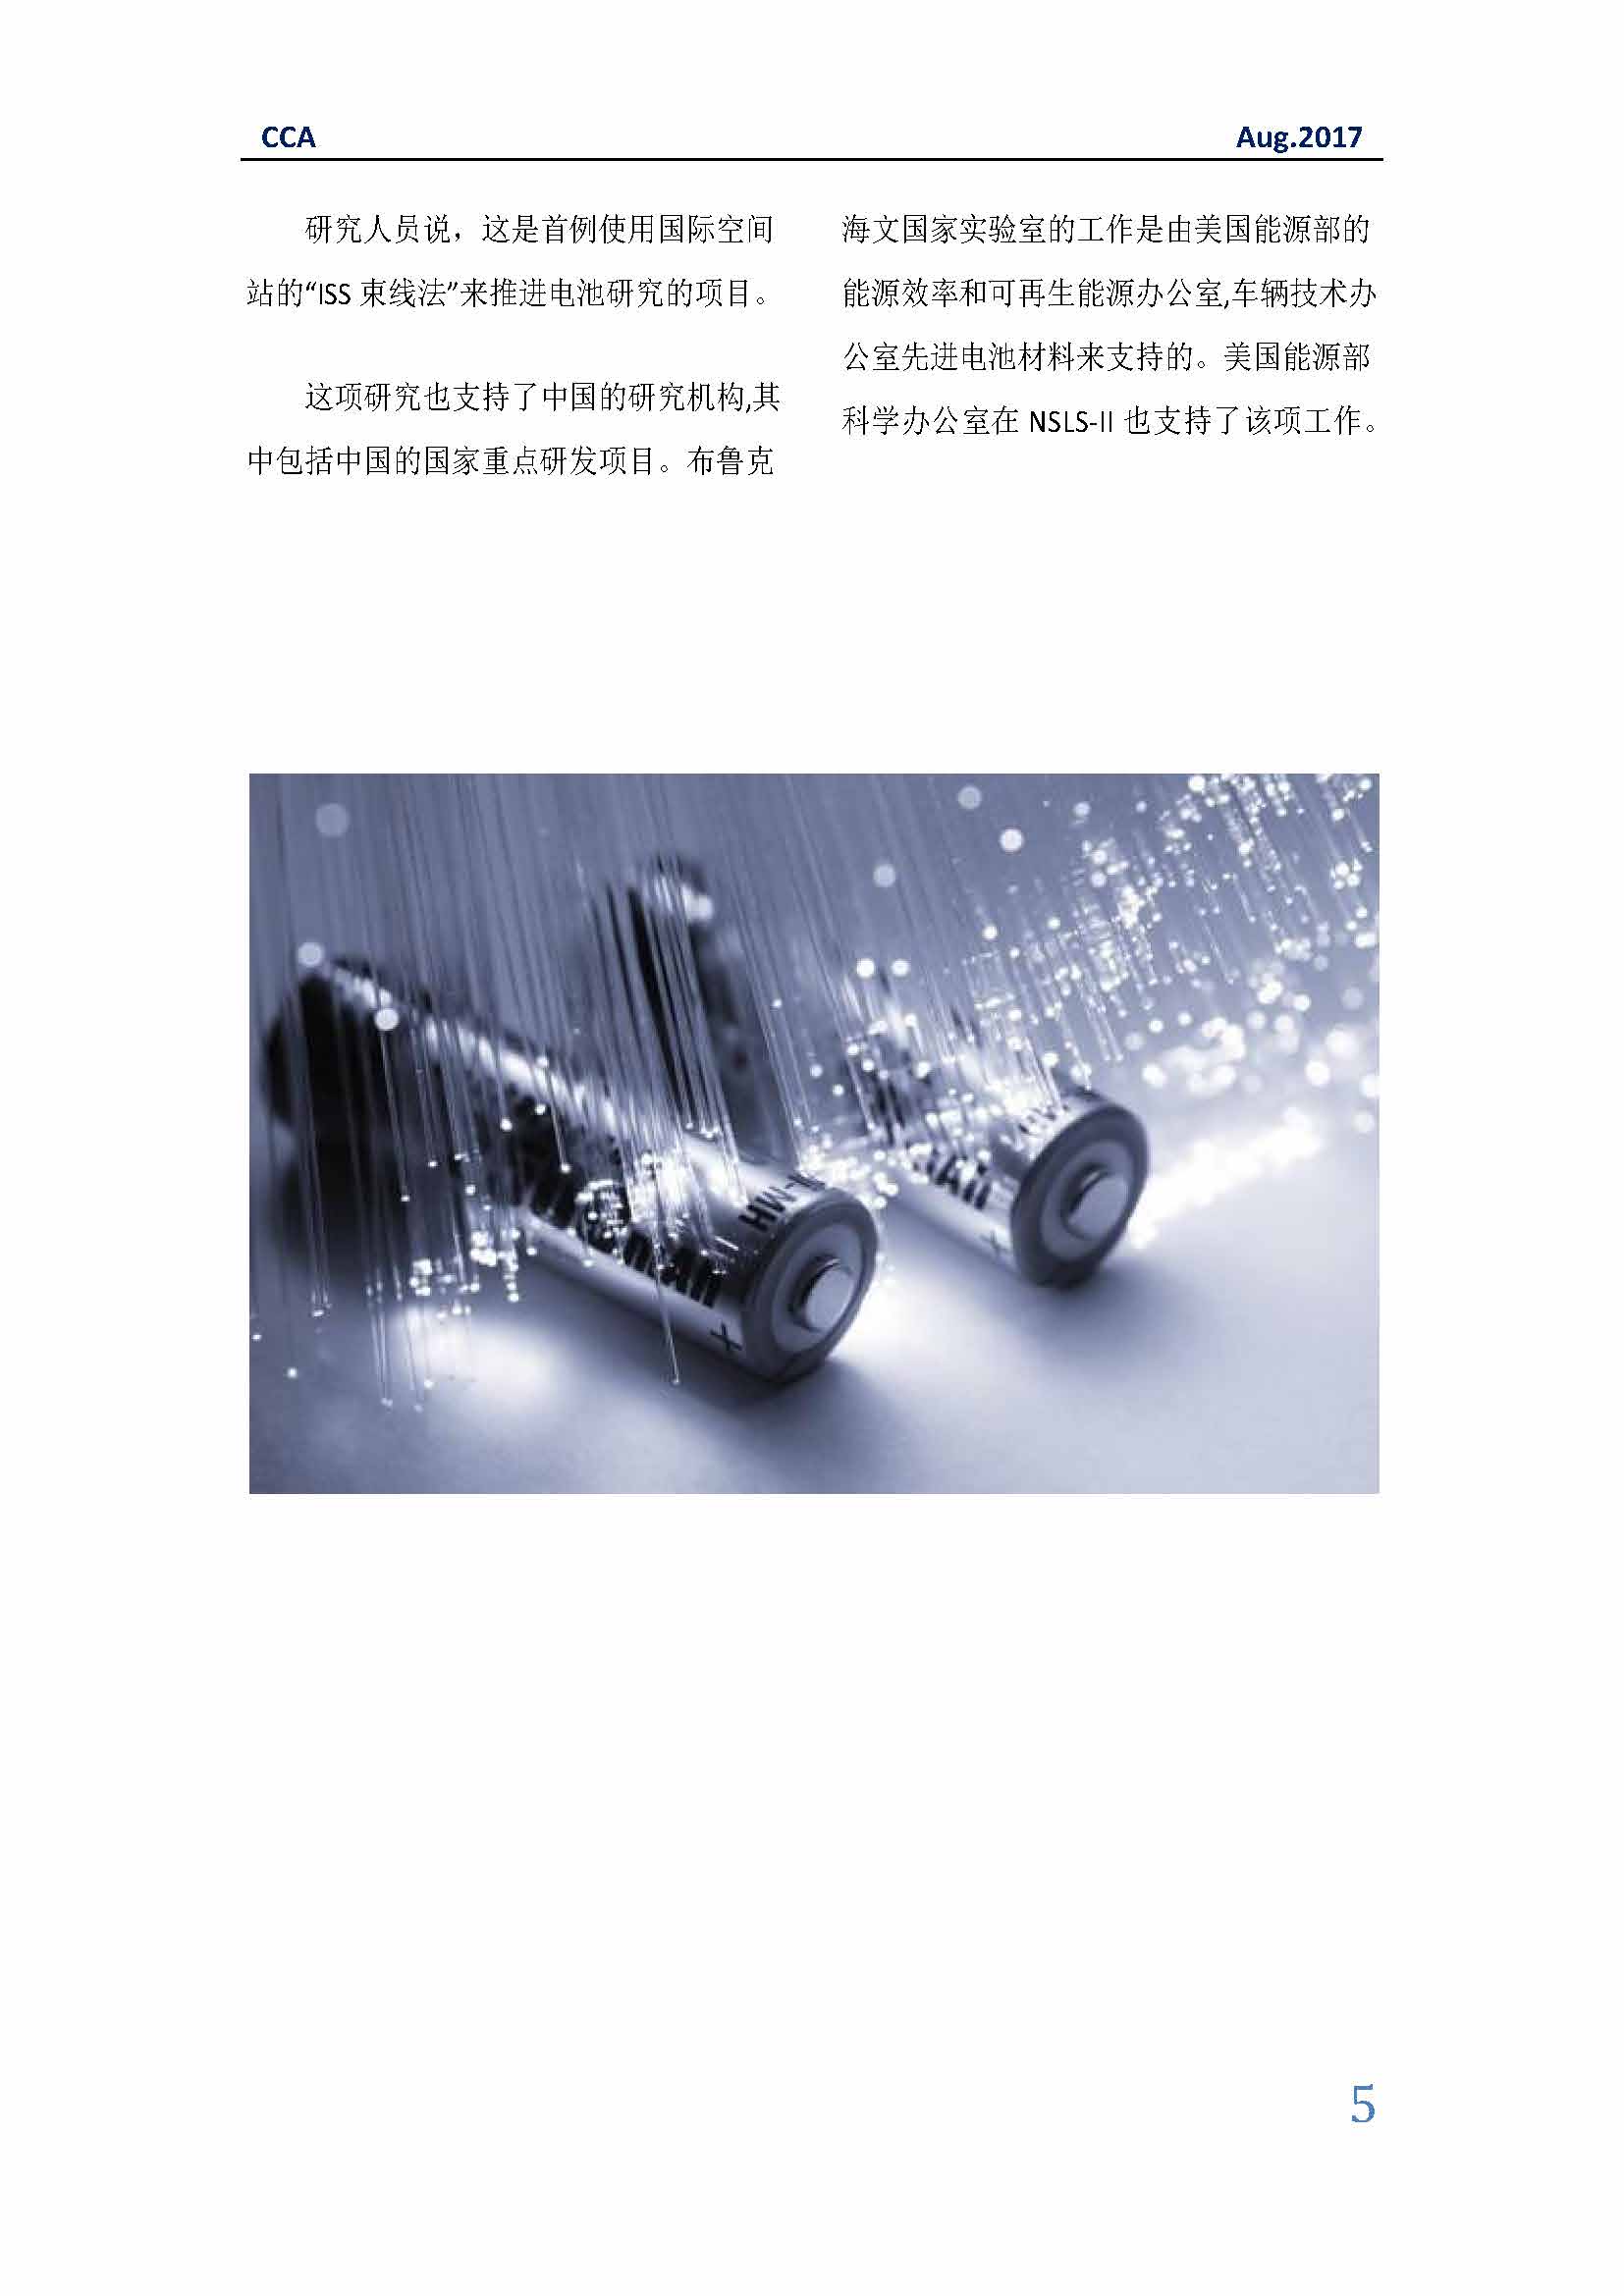 中国科技咨询协会国际快讯（第二十九期）_页面_05.jpg